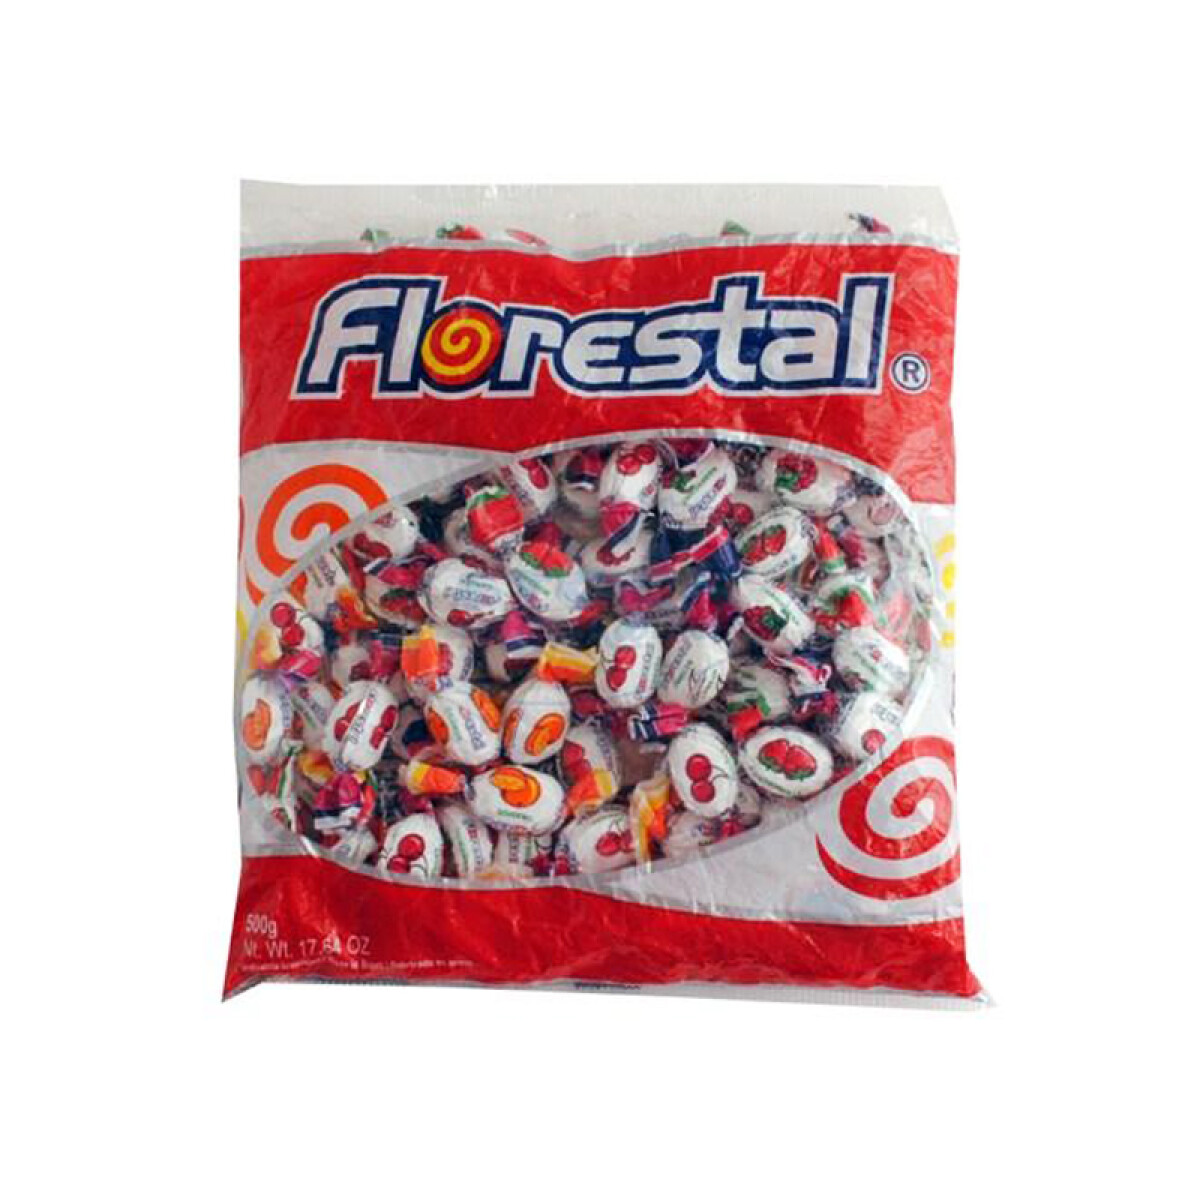 Caramelo FLORESTAL duro bolsa x120u 500grs - Frutas Rellenas 